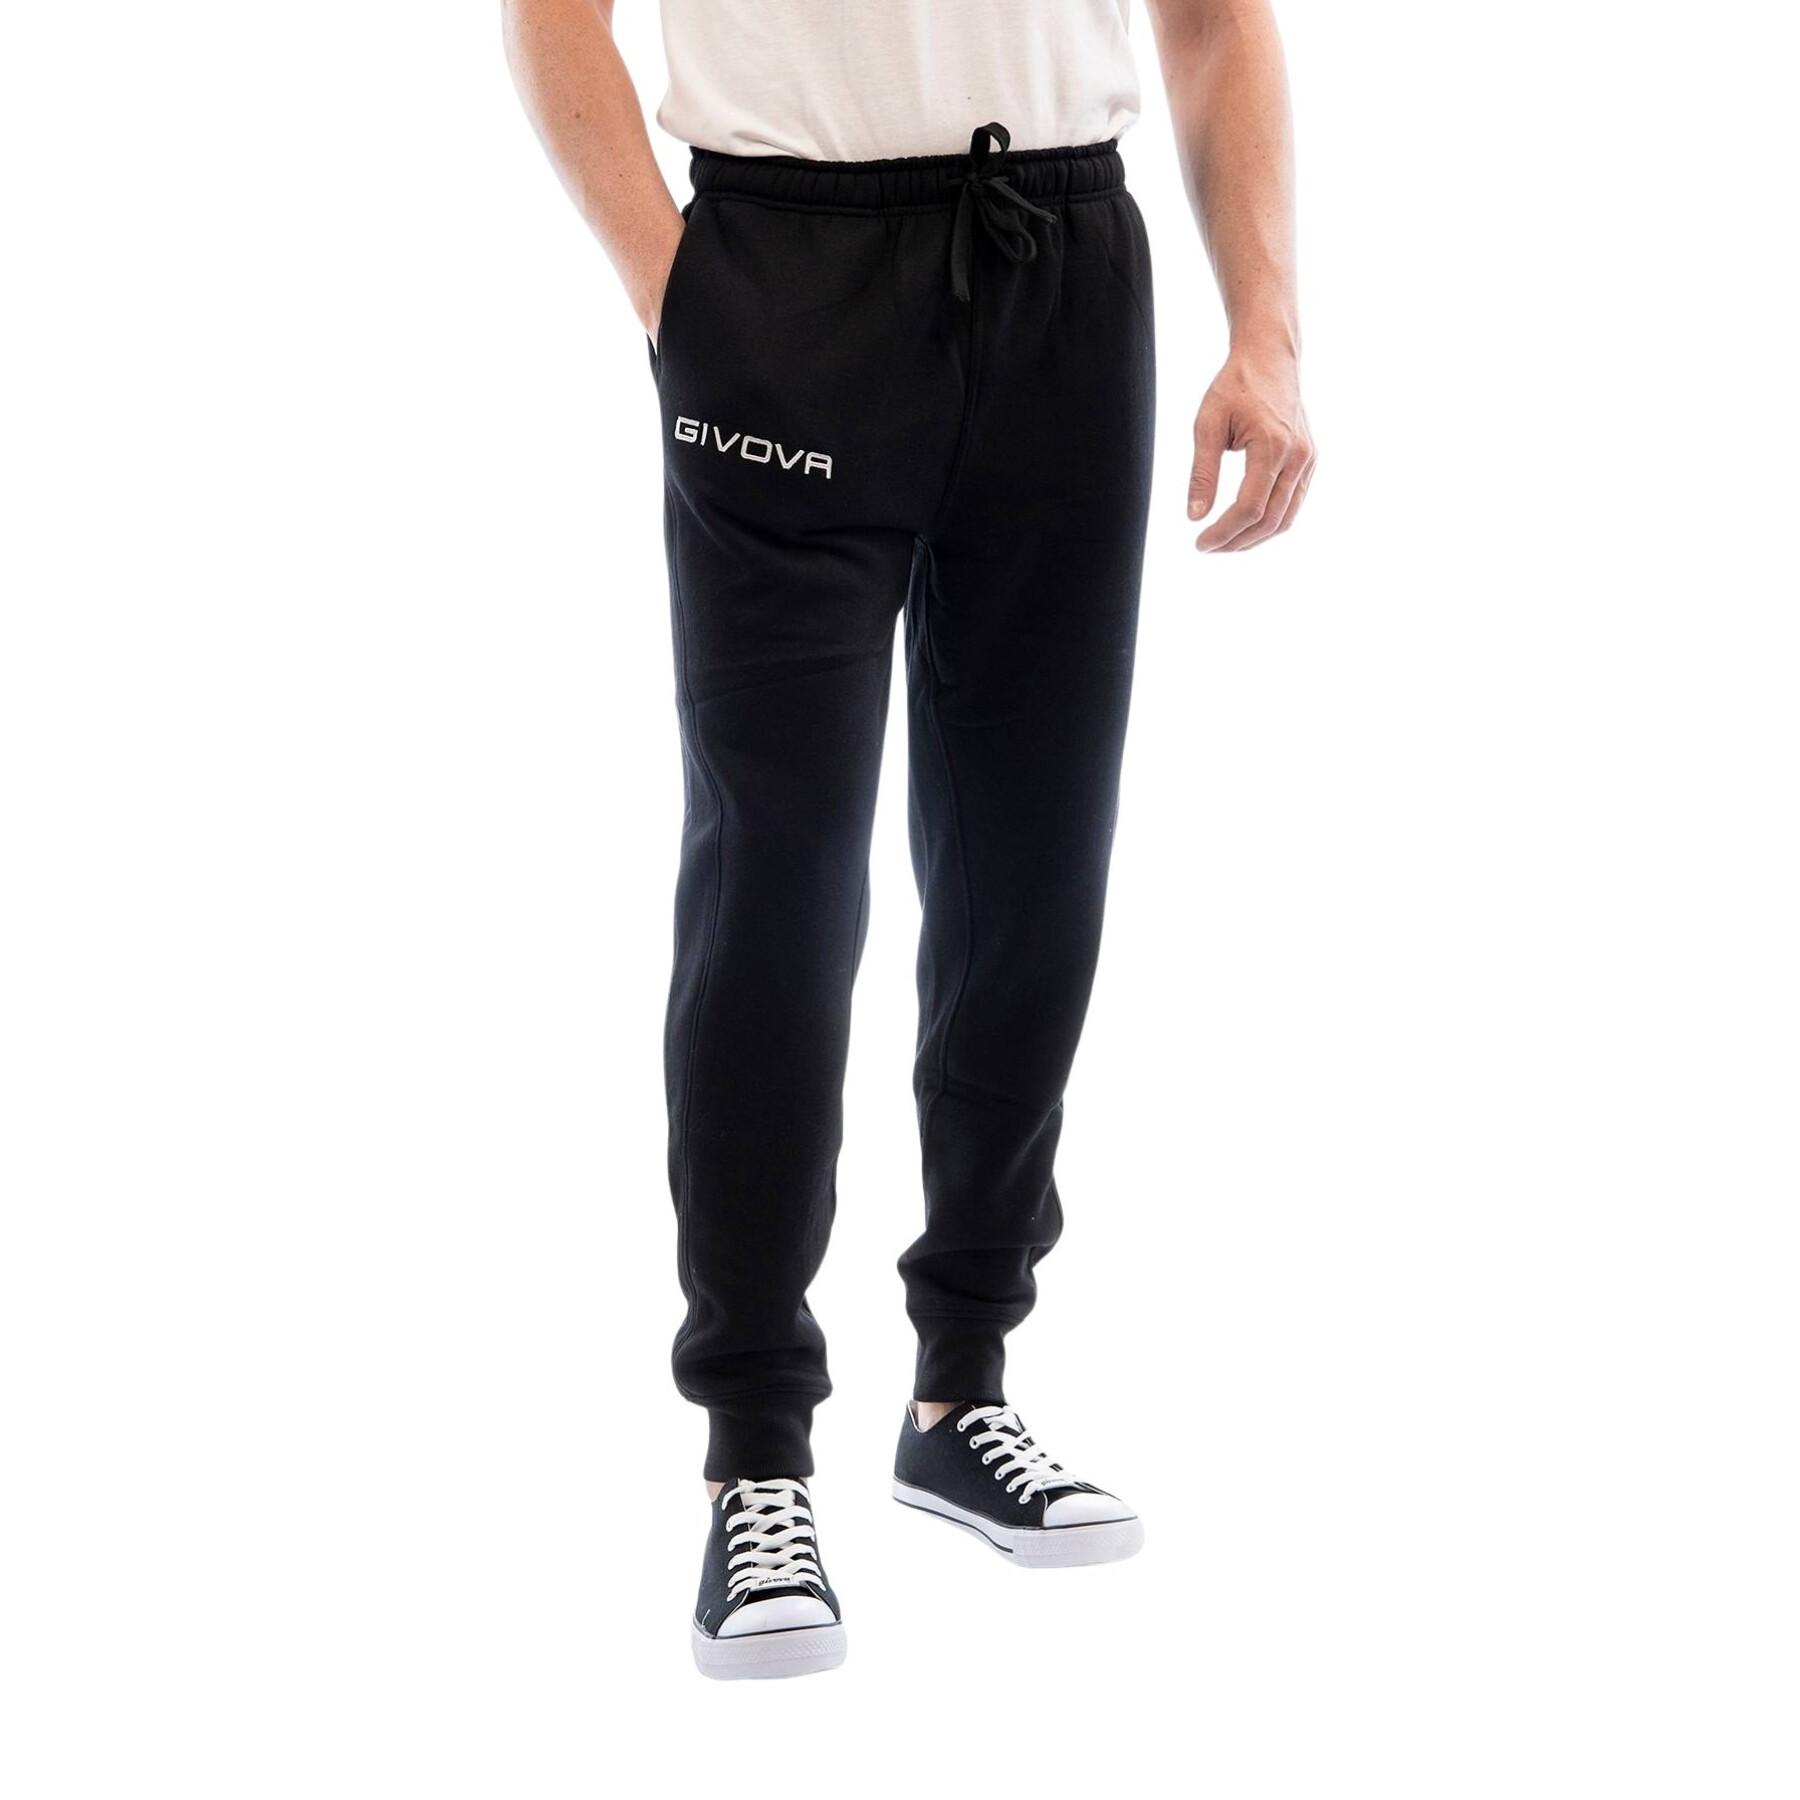 Pantalón de chándal Givova Révolution - Pantalones - Lifestyle